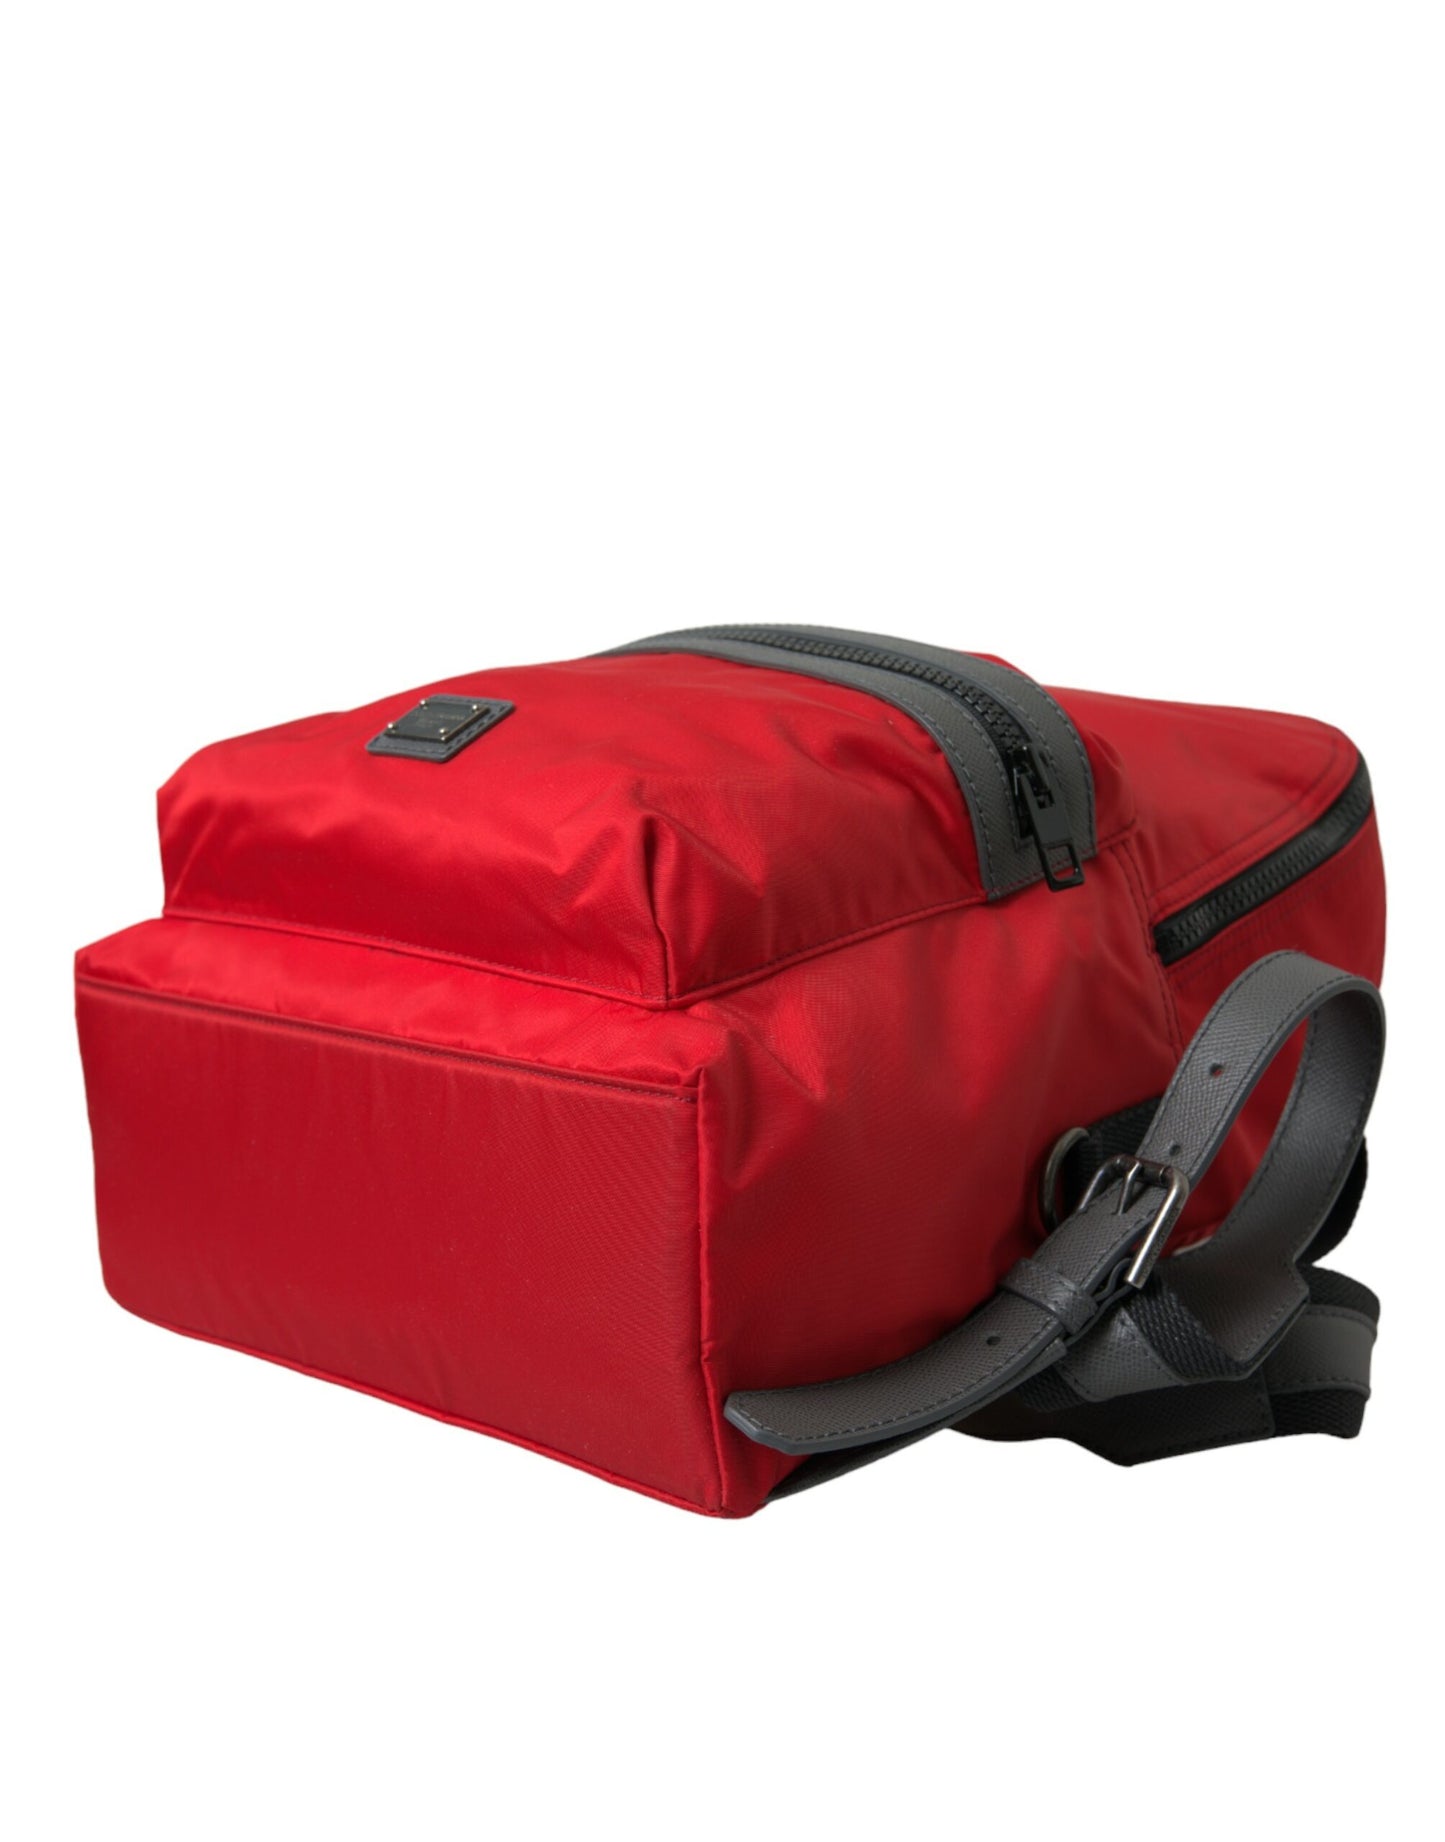 Red Nylon Leather DG Logo School Backpack Bag